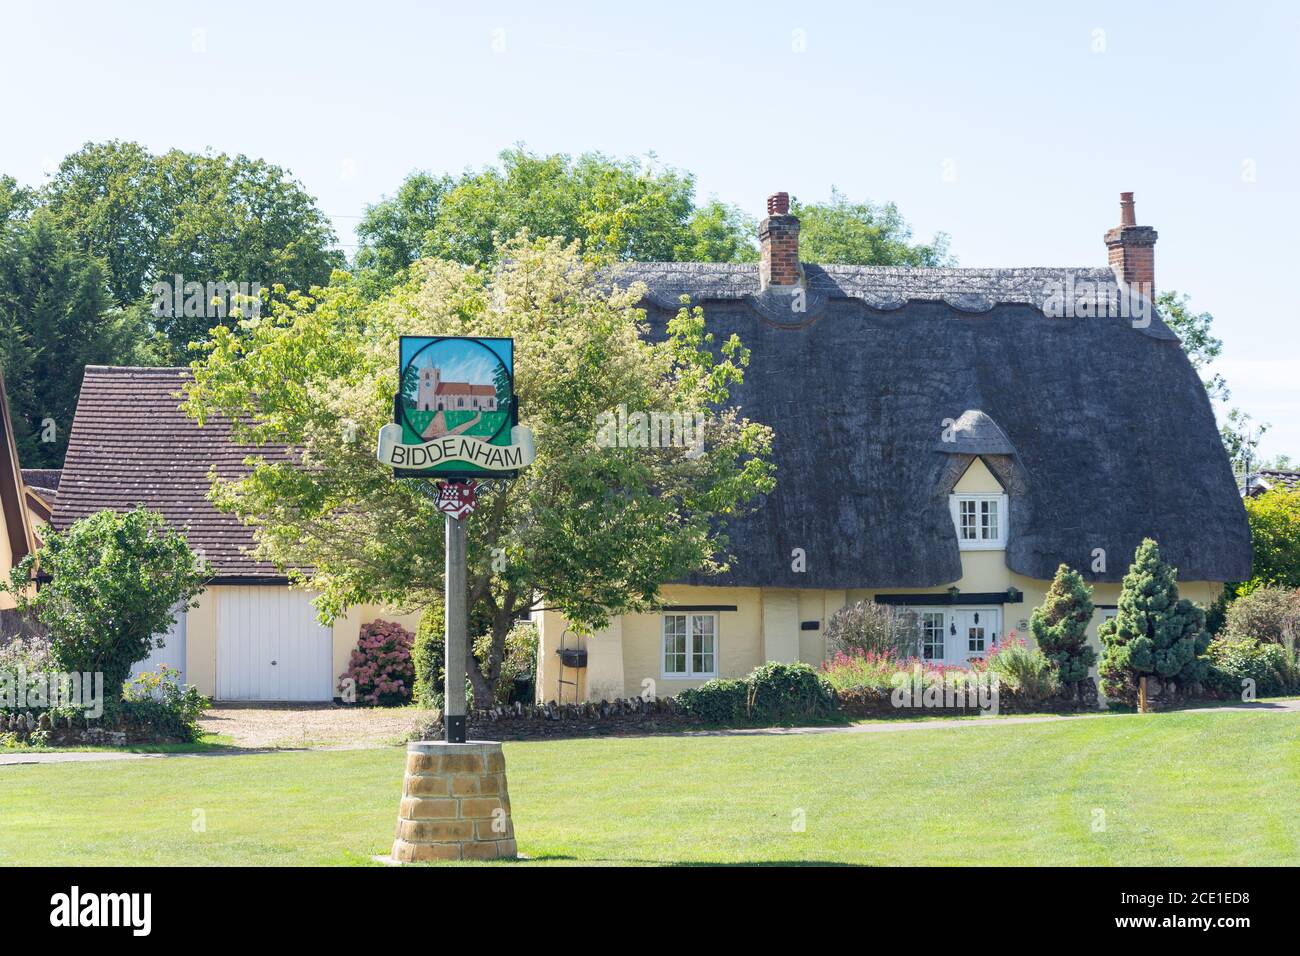 Cottage e villaggio di paglia segno, il verde, Biddenham, Bedfordshire, Inghilterra, Regno Unito Foto Stock